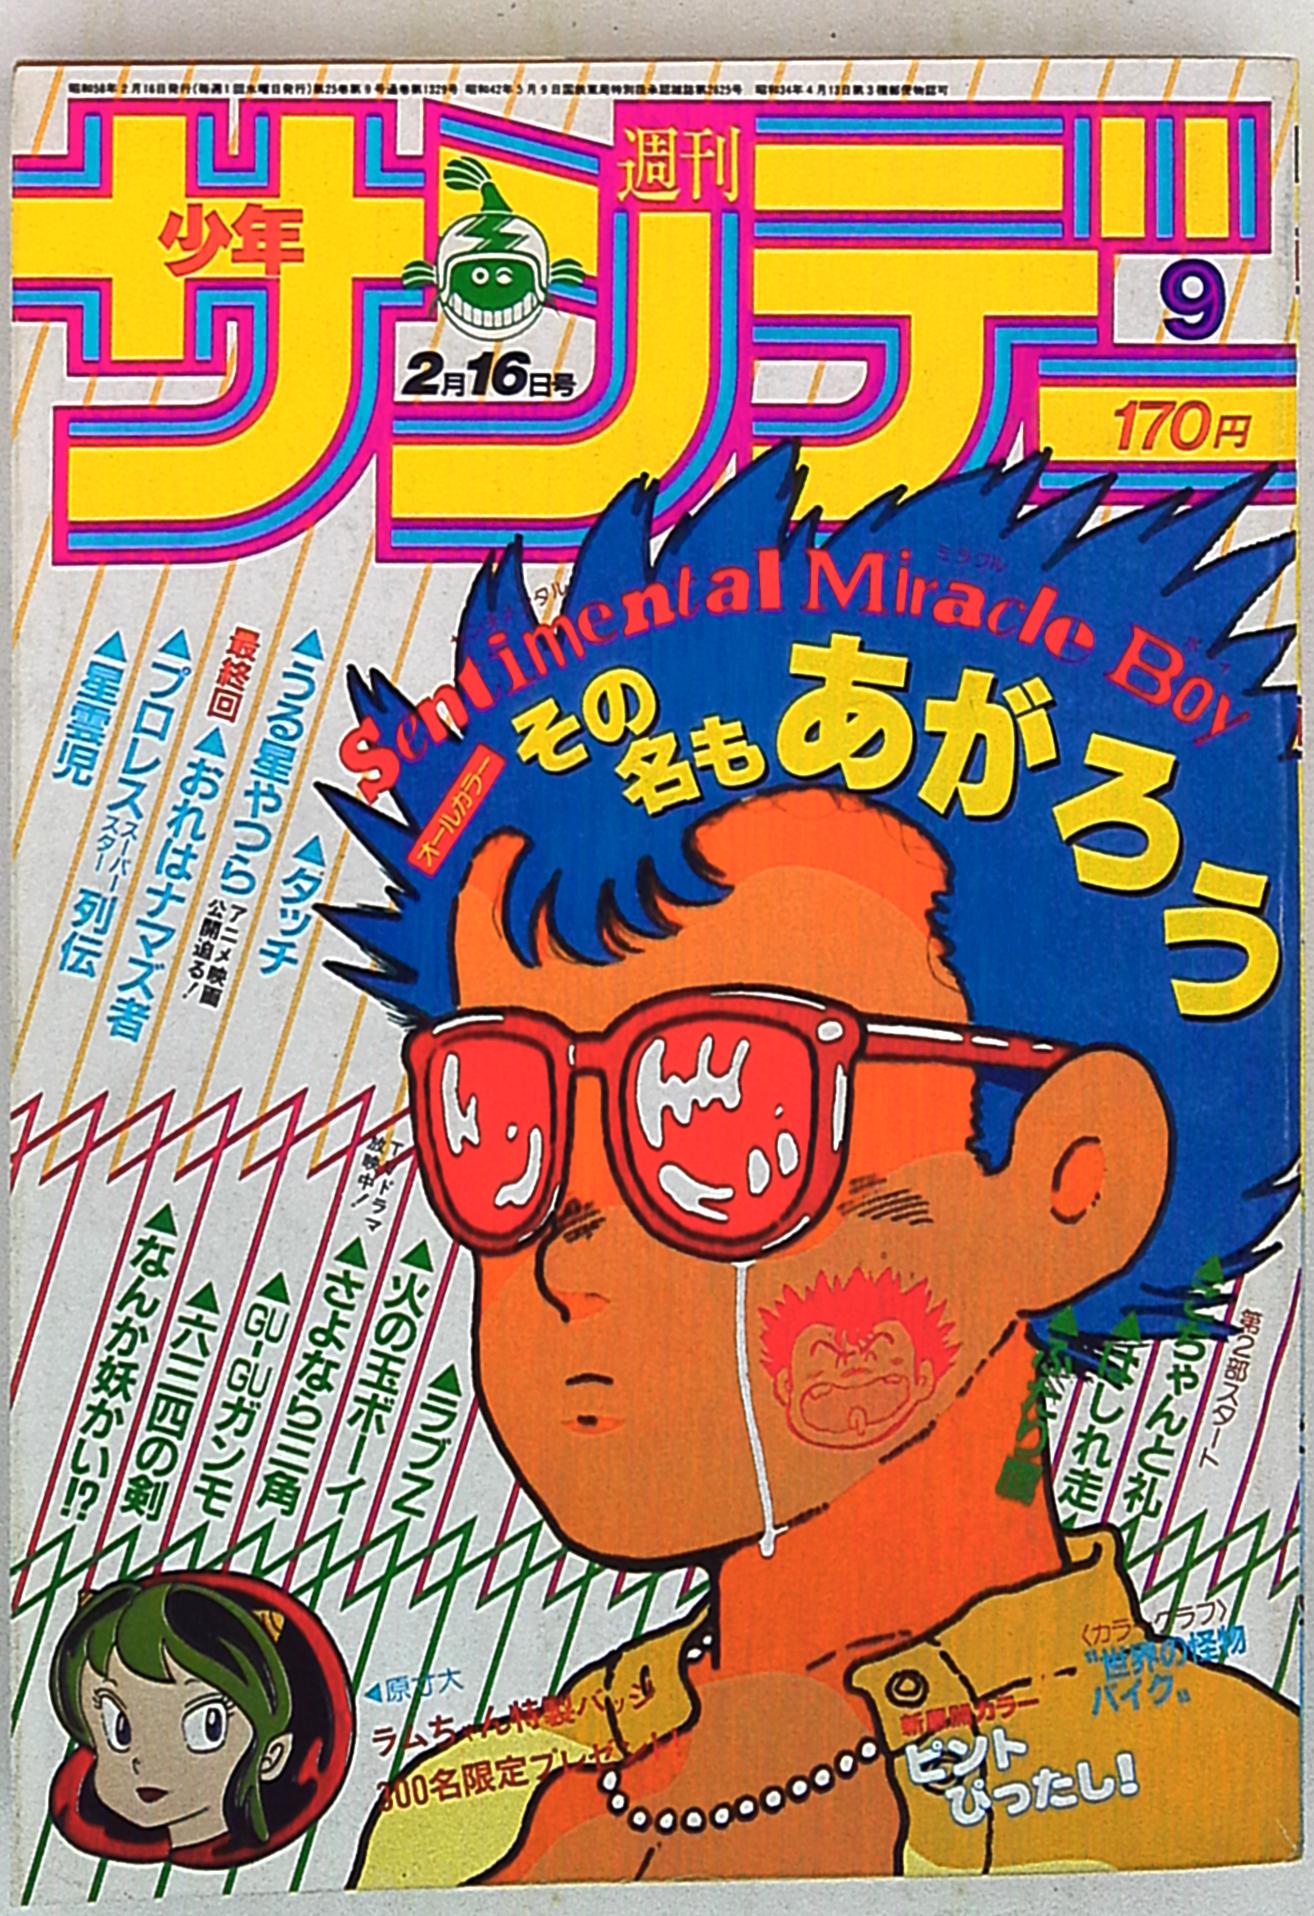 小学館 1983年(昭和58年)の漫画雑誌 週刊少年サンデー1983年(昭和58年 